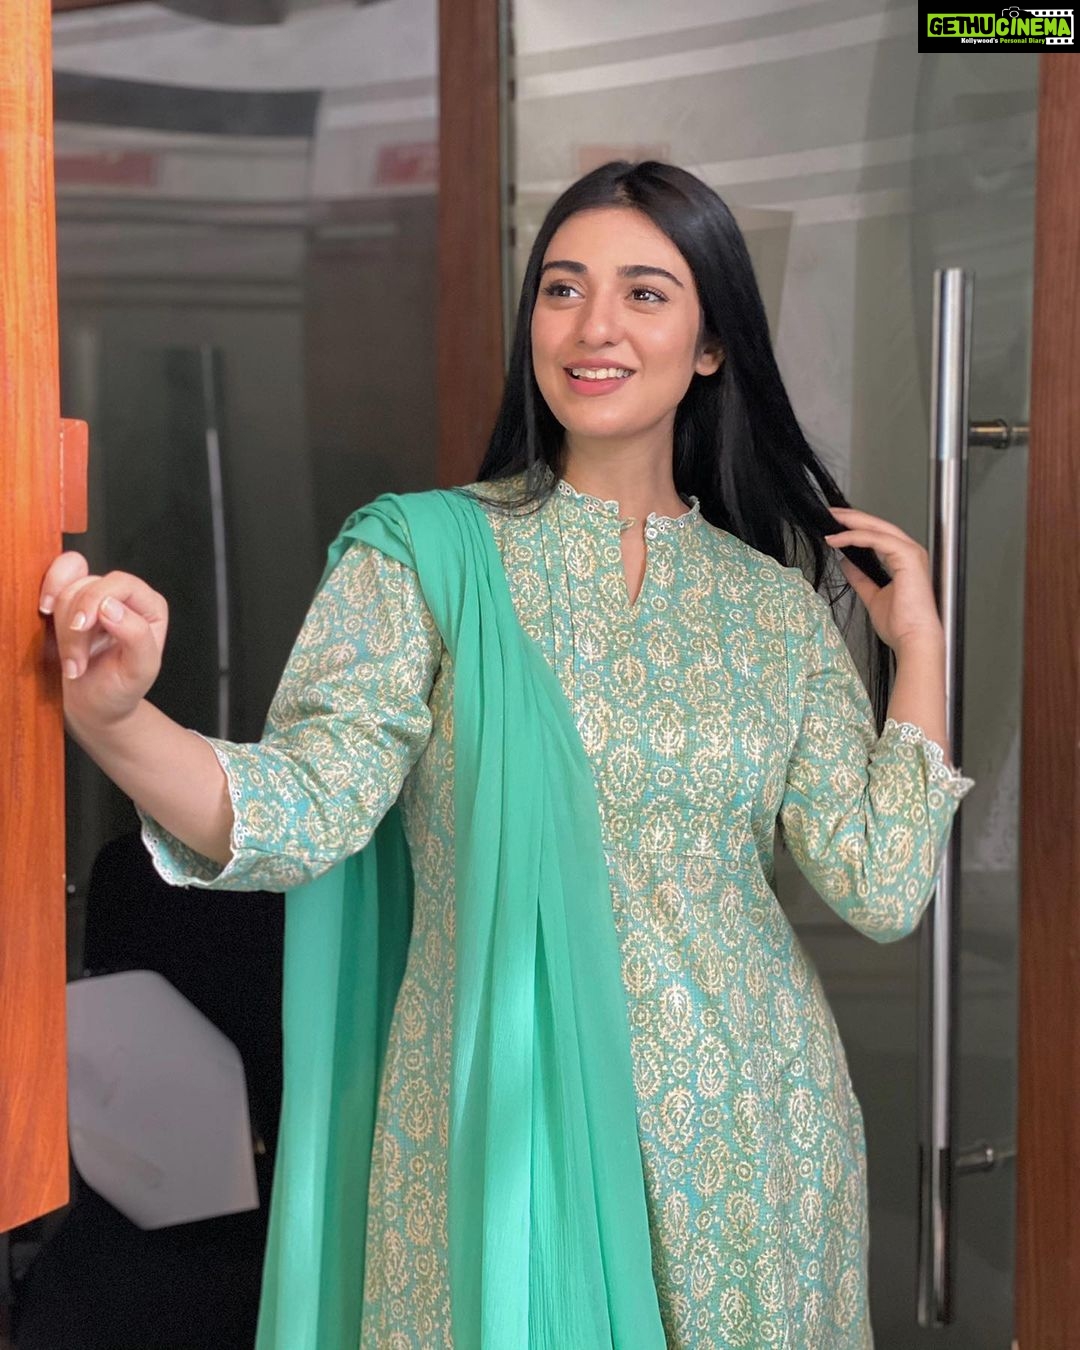 Actress Sarah Khan Instagram Photos and Posts May 2021 - Gethu Cinema